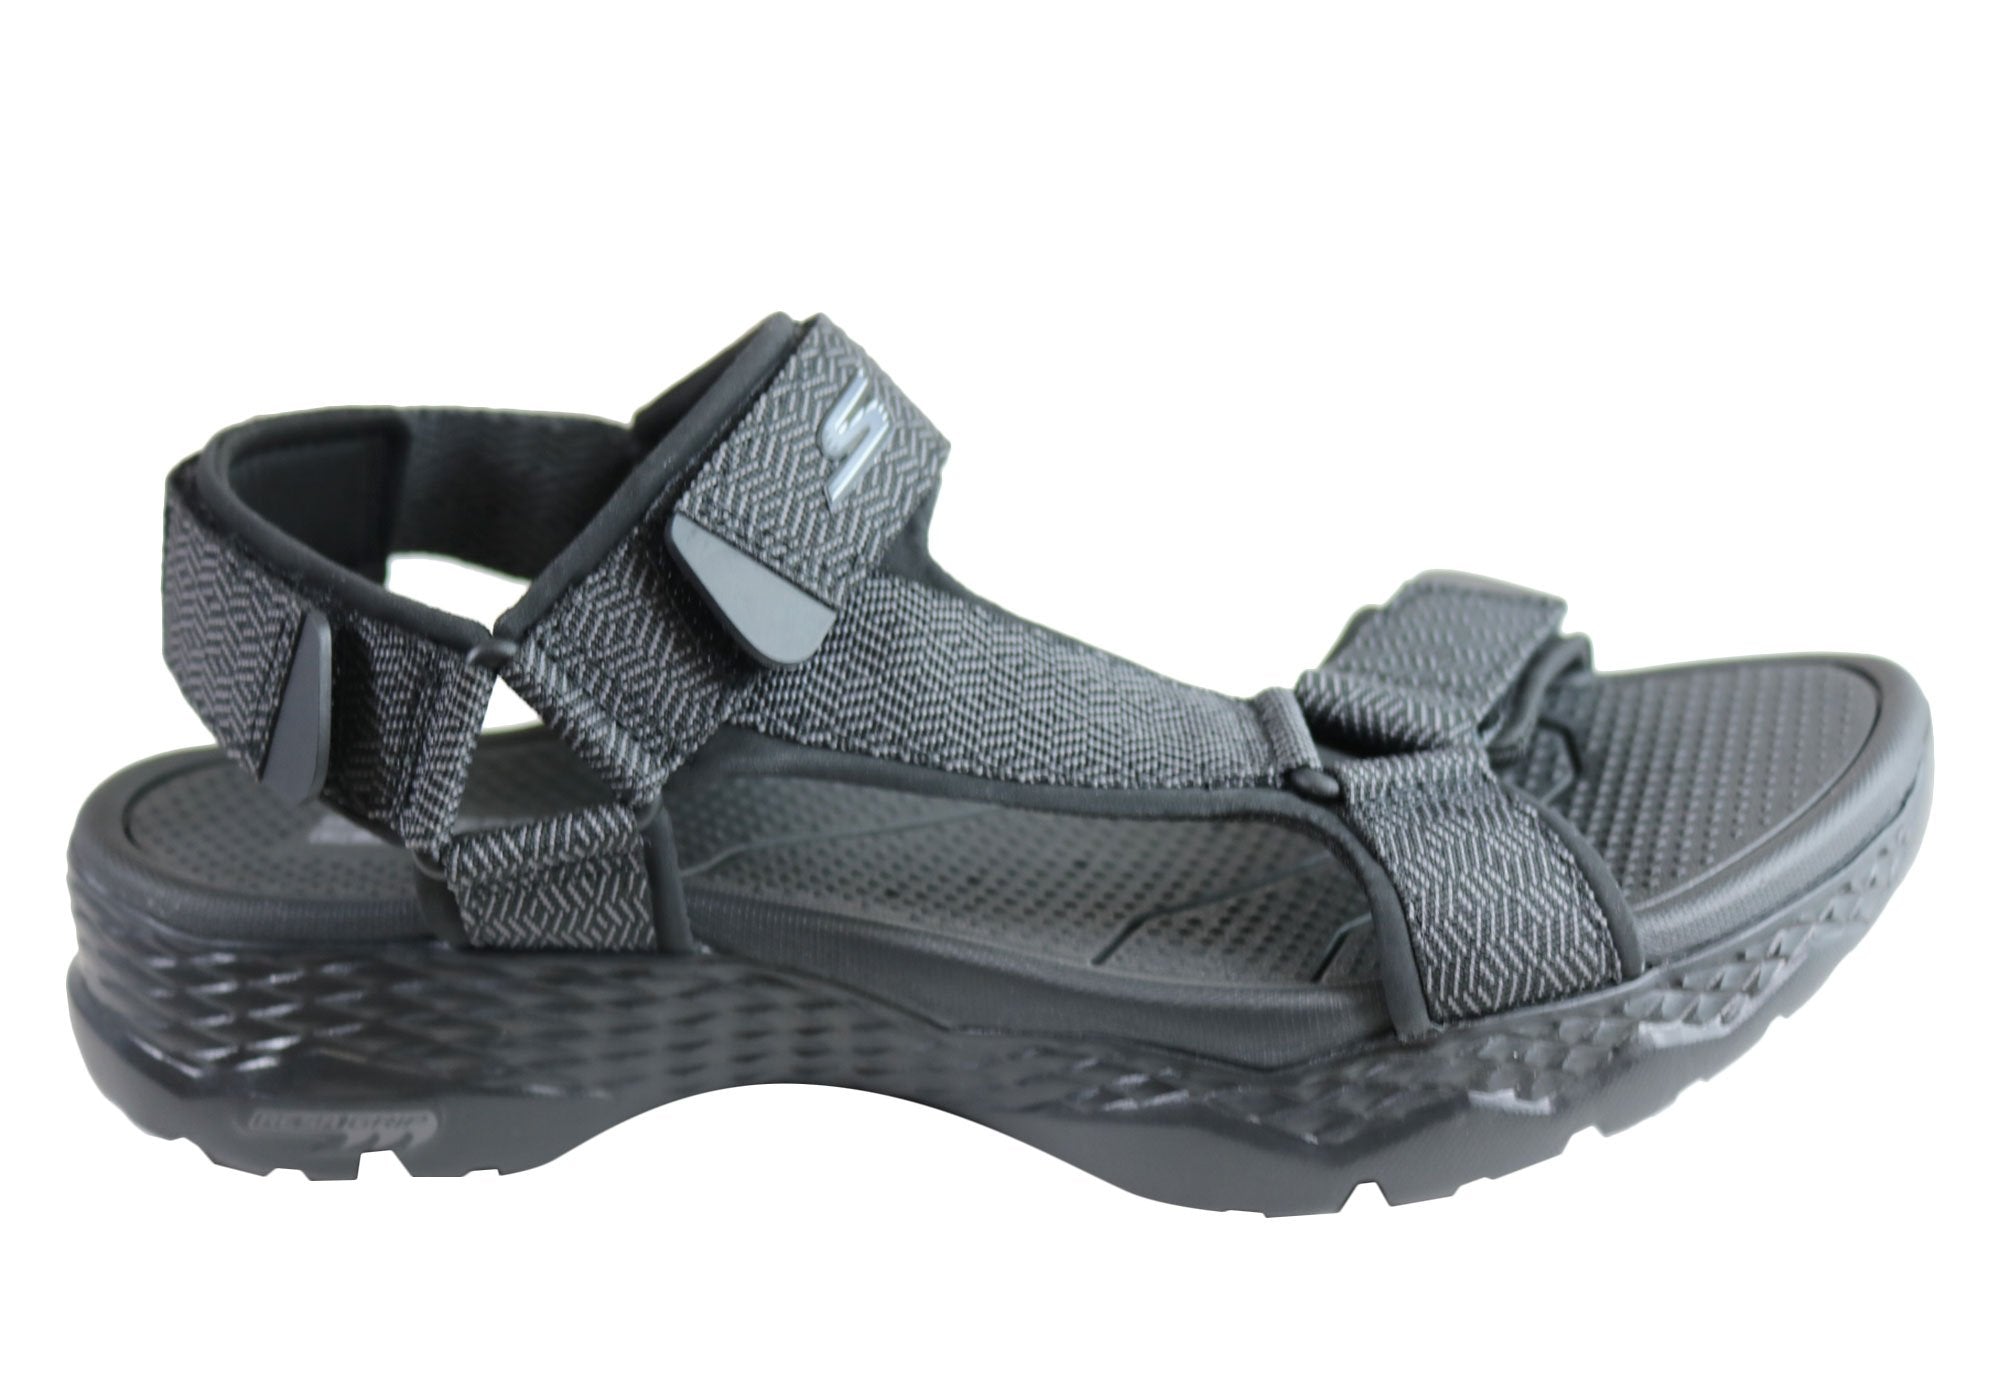 Skechers Mens Go Walk Outdoors Nature Comfort Adjustable Sandals ...